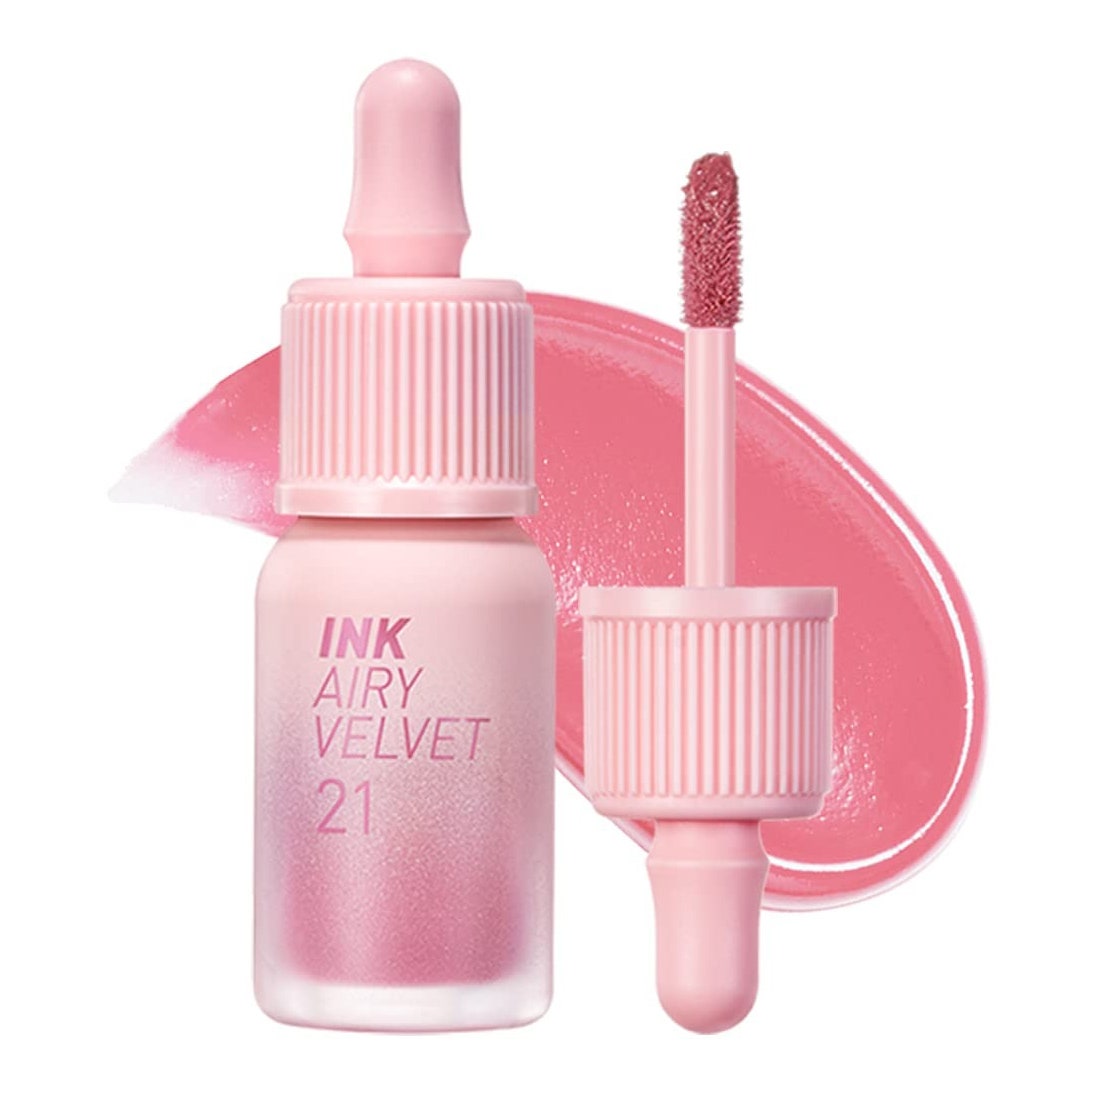 Peripera Ink Airy Velvet Lip Tint Fläschchen mit rosa Lippentönung mit Farbmuster dahinter auf weißem Hintergrund